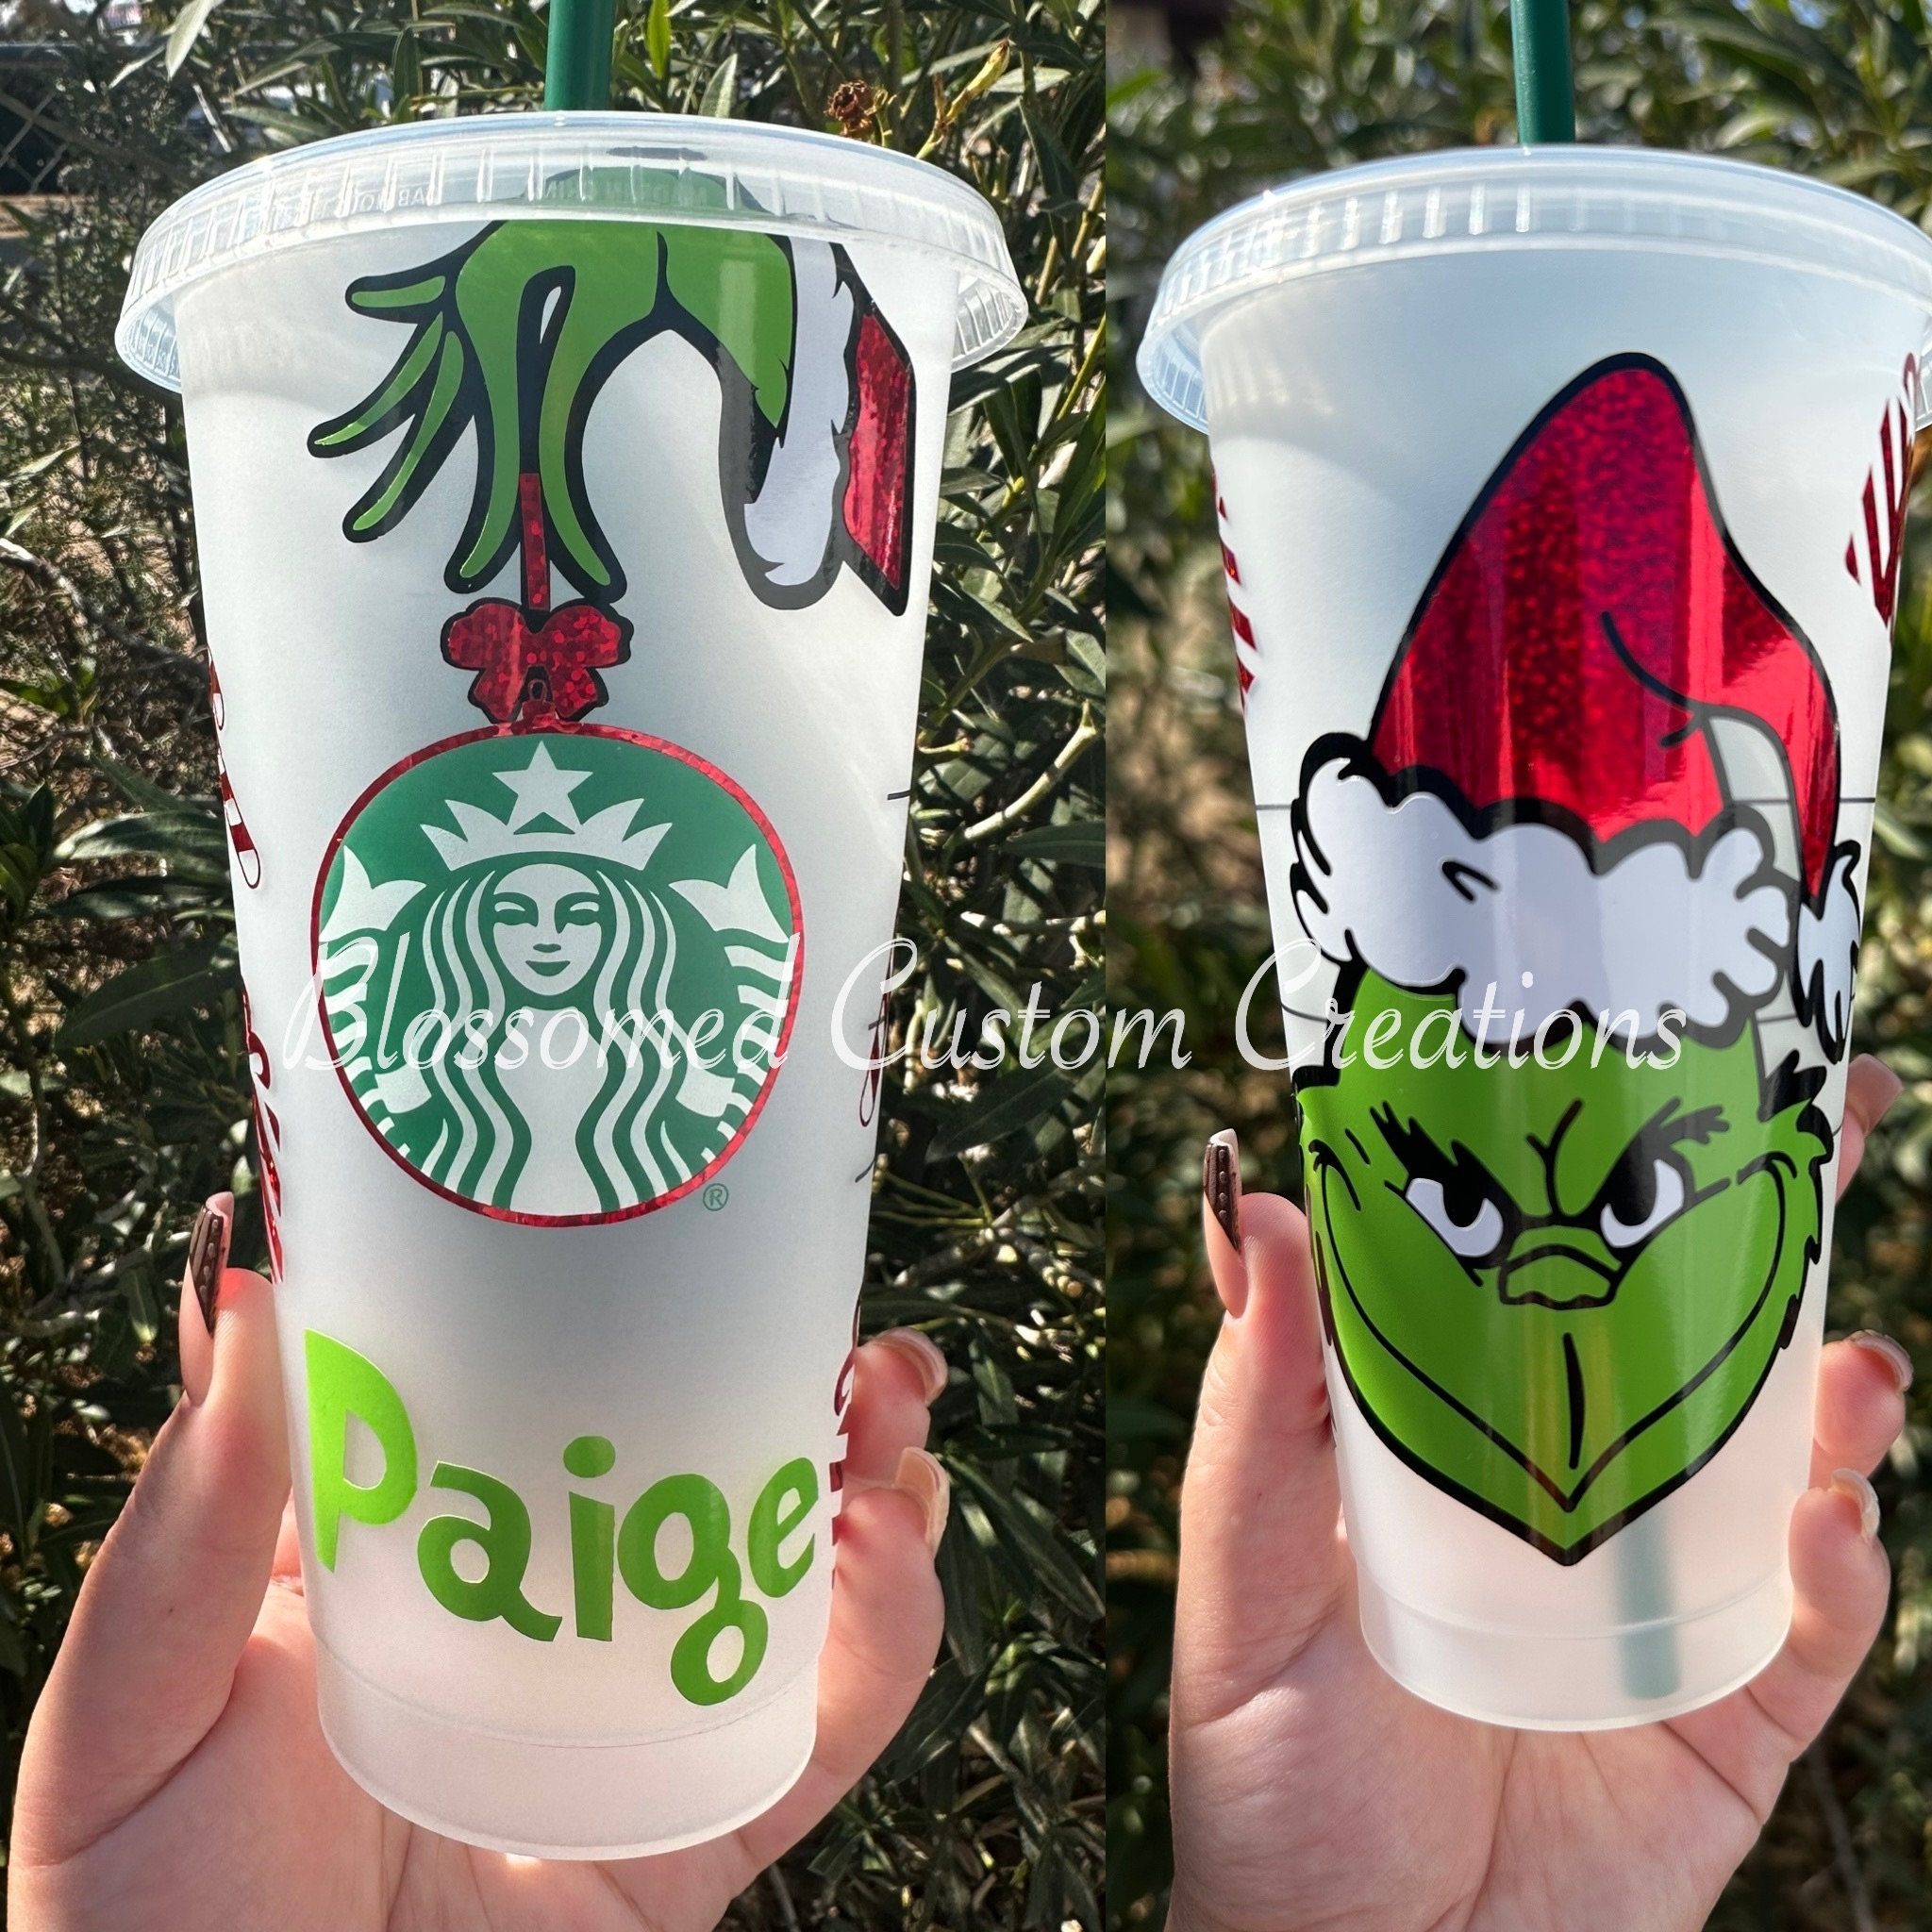 starbucks holiday red mug cup white lid plastic xmas christmas reusable  washable